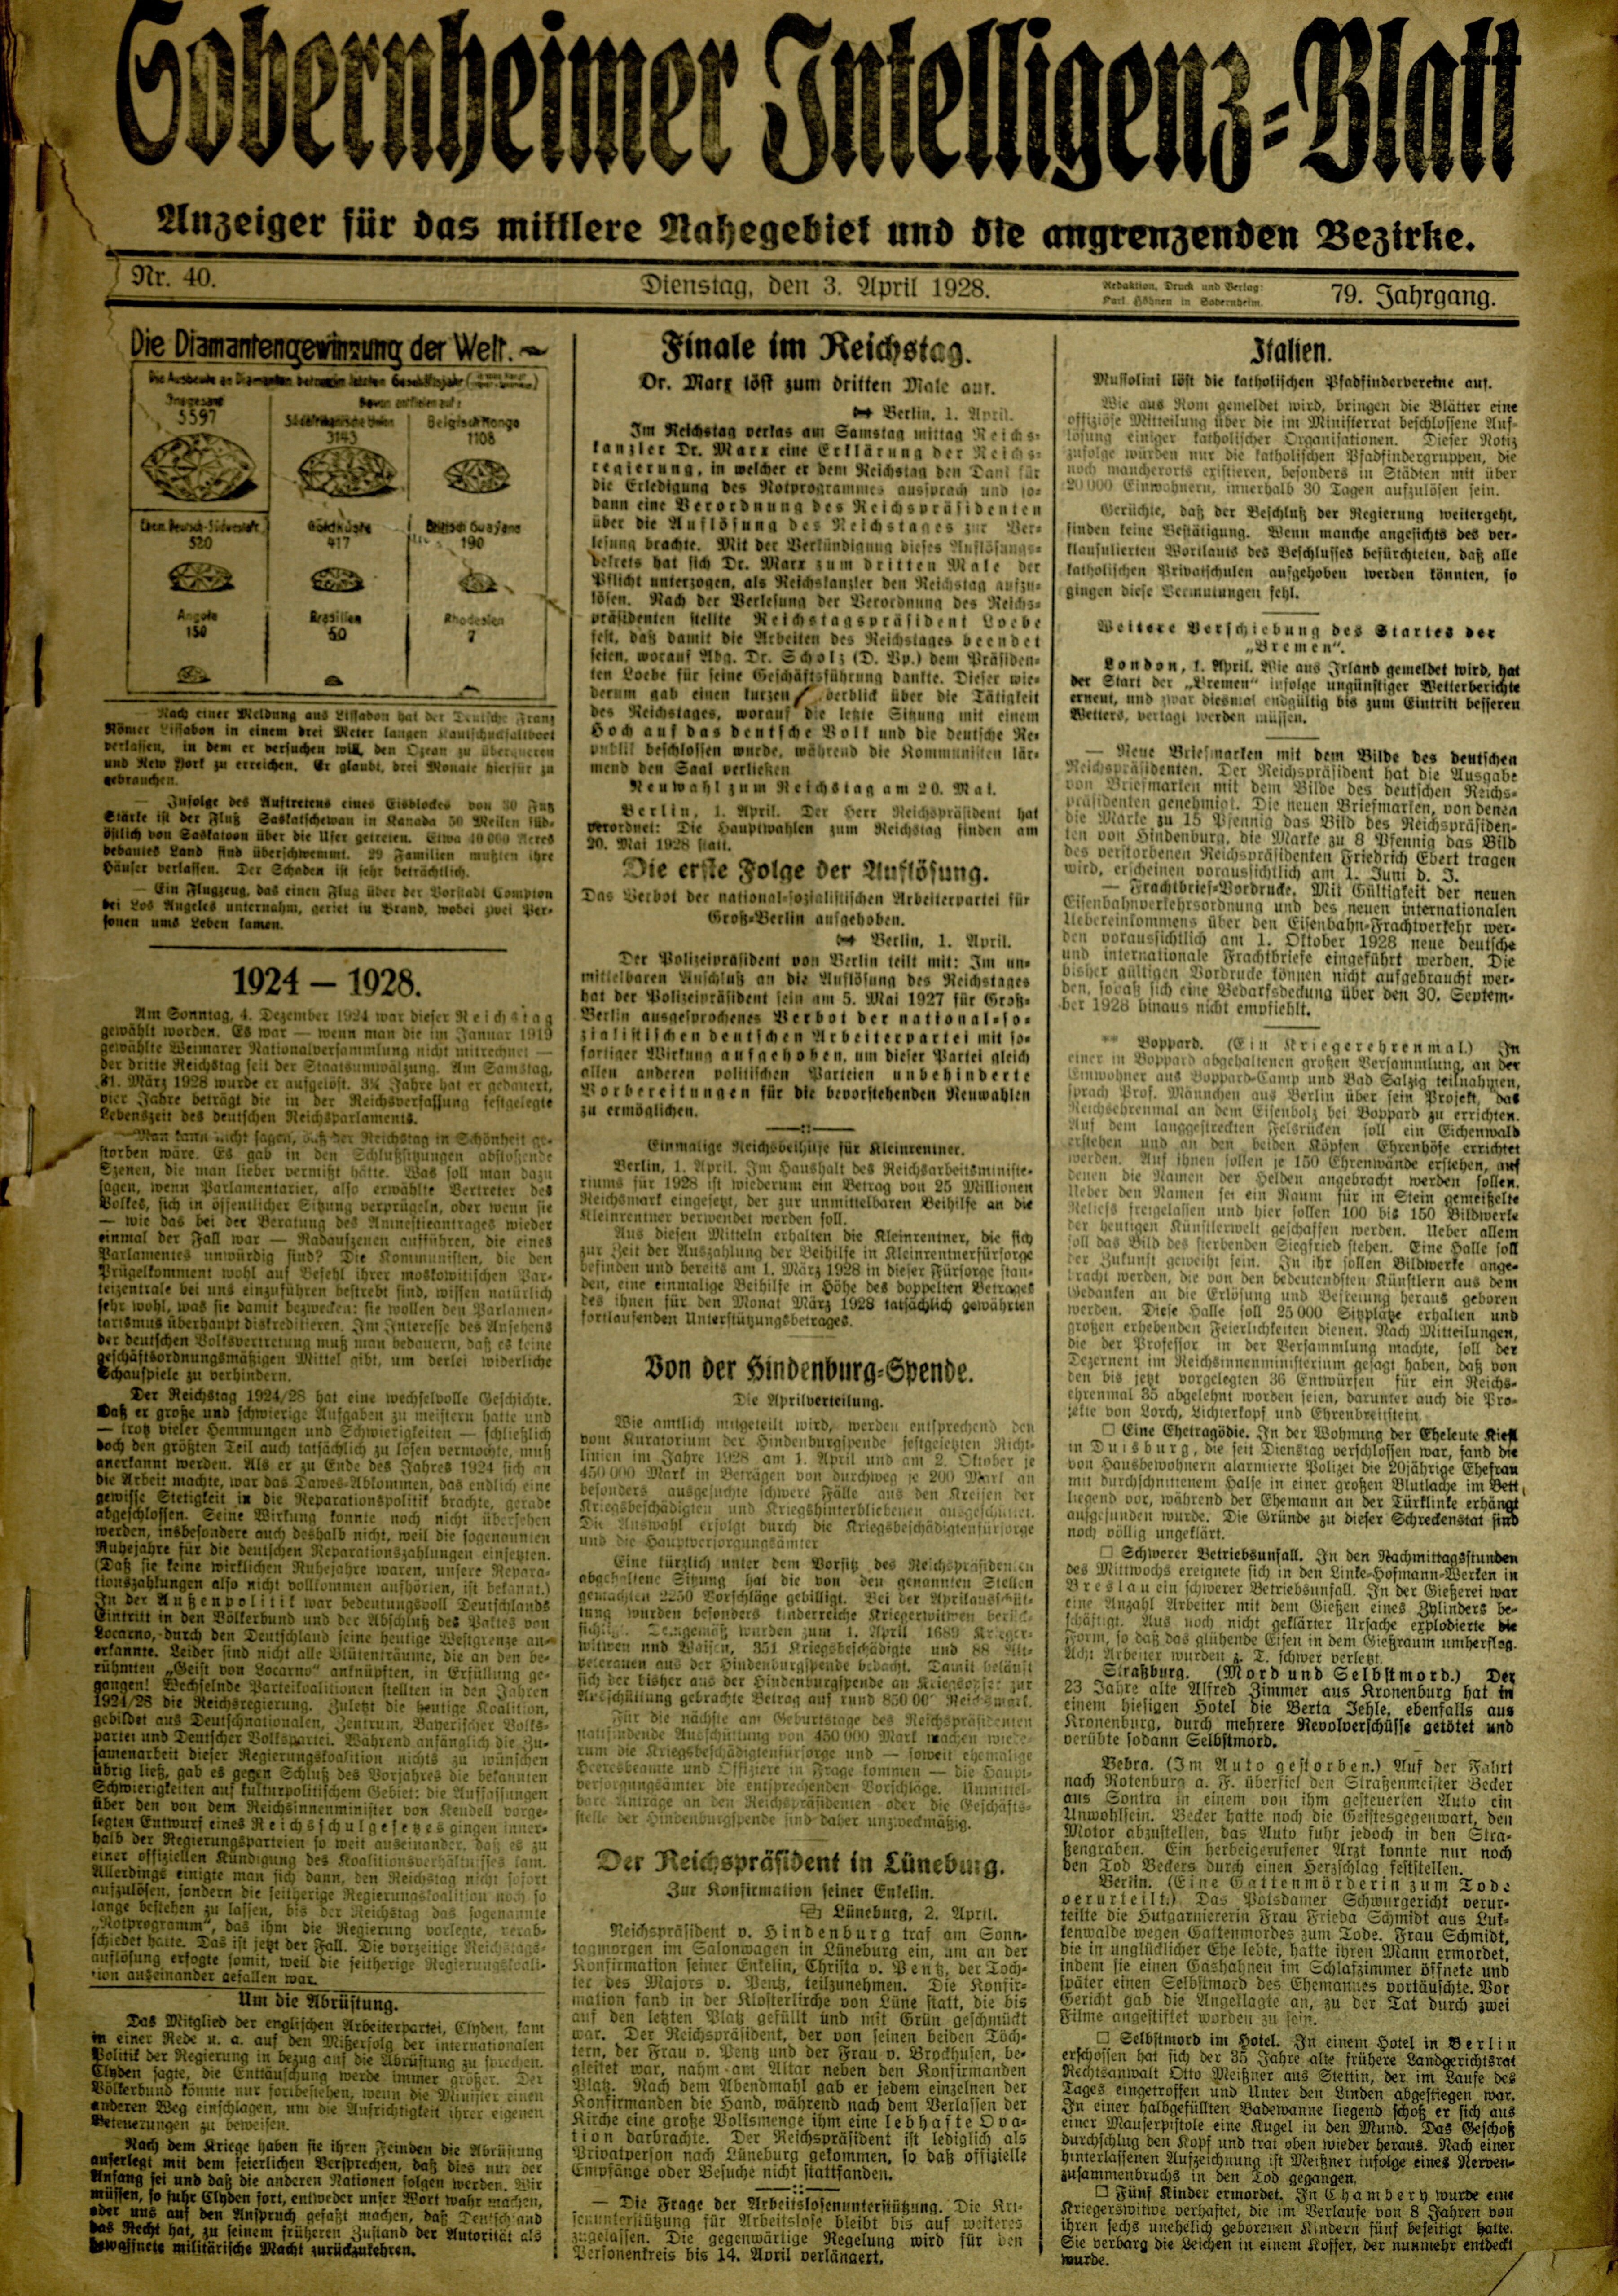 Zeitung: Sobernheimer Intelligenzblatt; April 1927, Jg. 79 Nr. 40 (Heimatmuseum Bad Sobernheim CC BY-NC-SA)